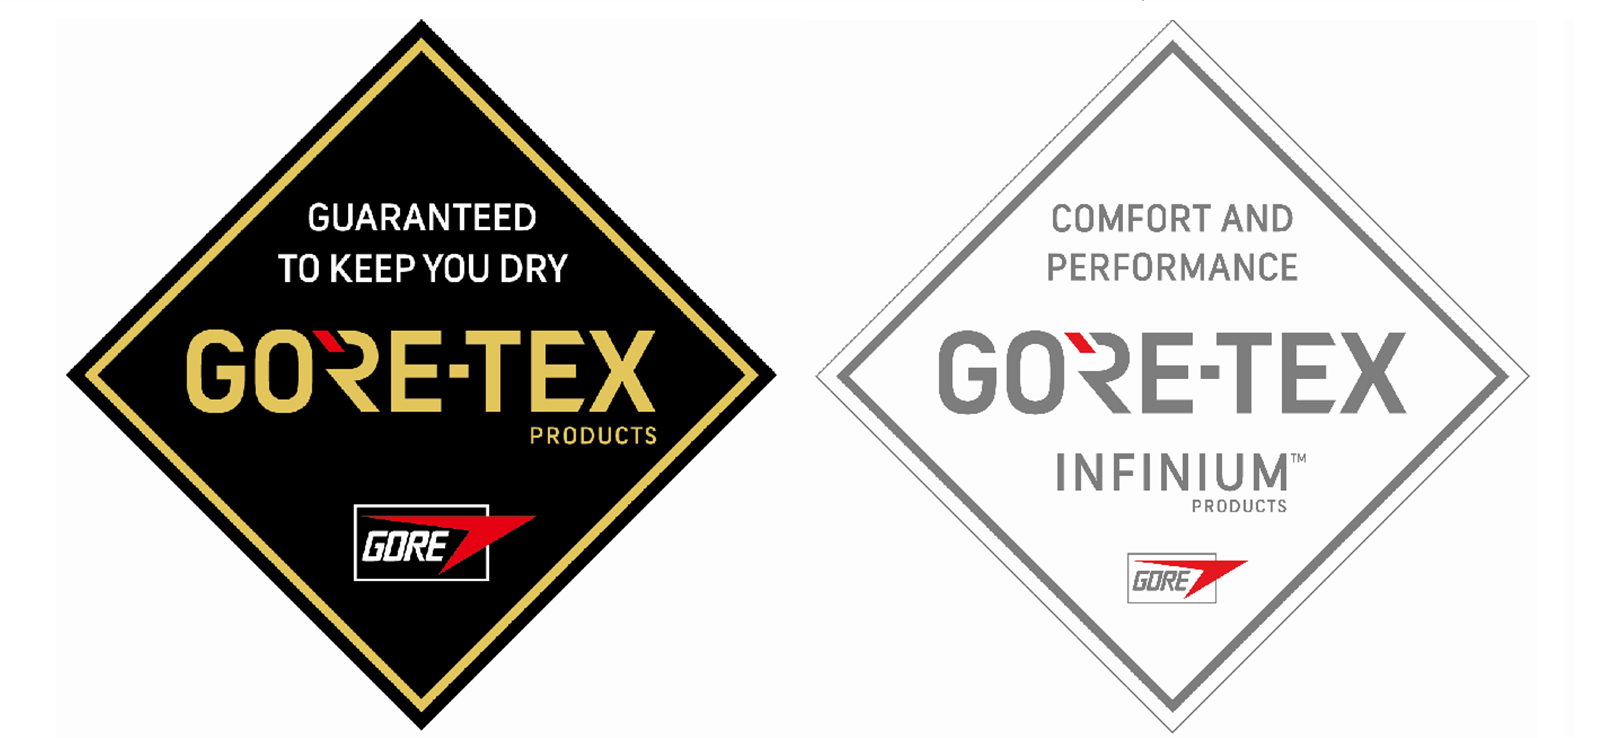 GORE-TEX非防水系列產品  陳柏霖潮牌吸睛設計